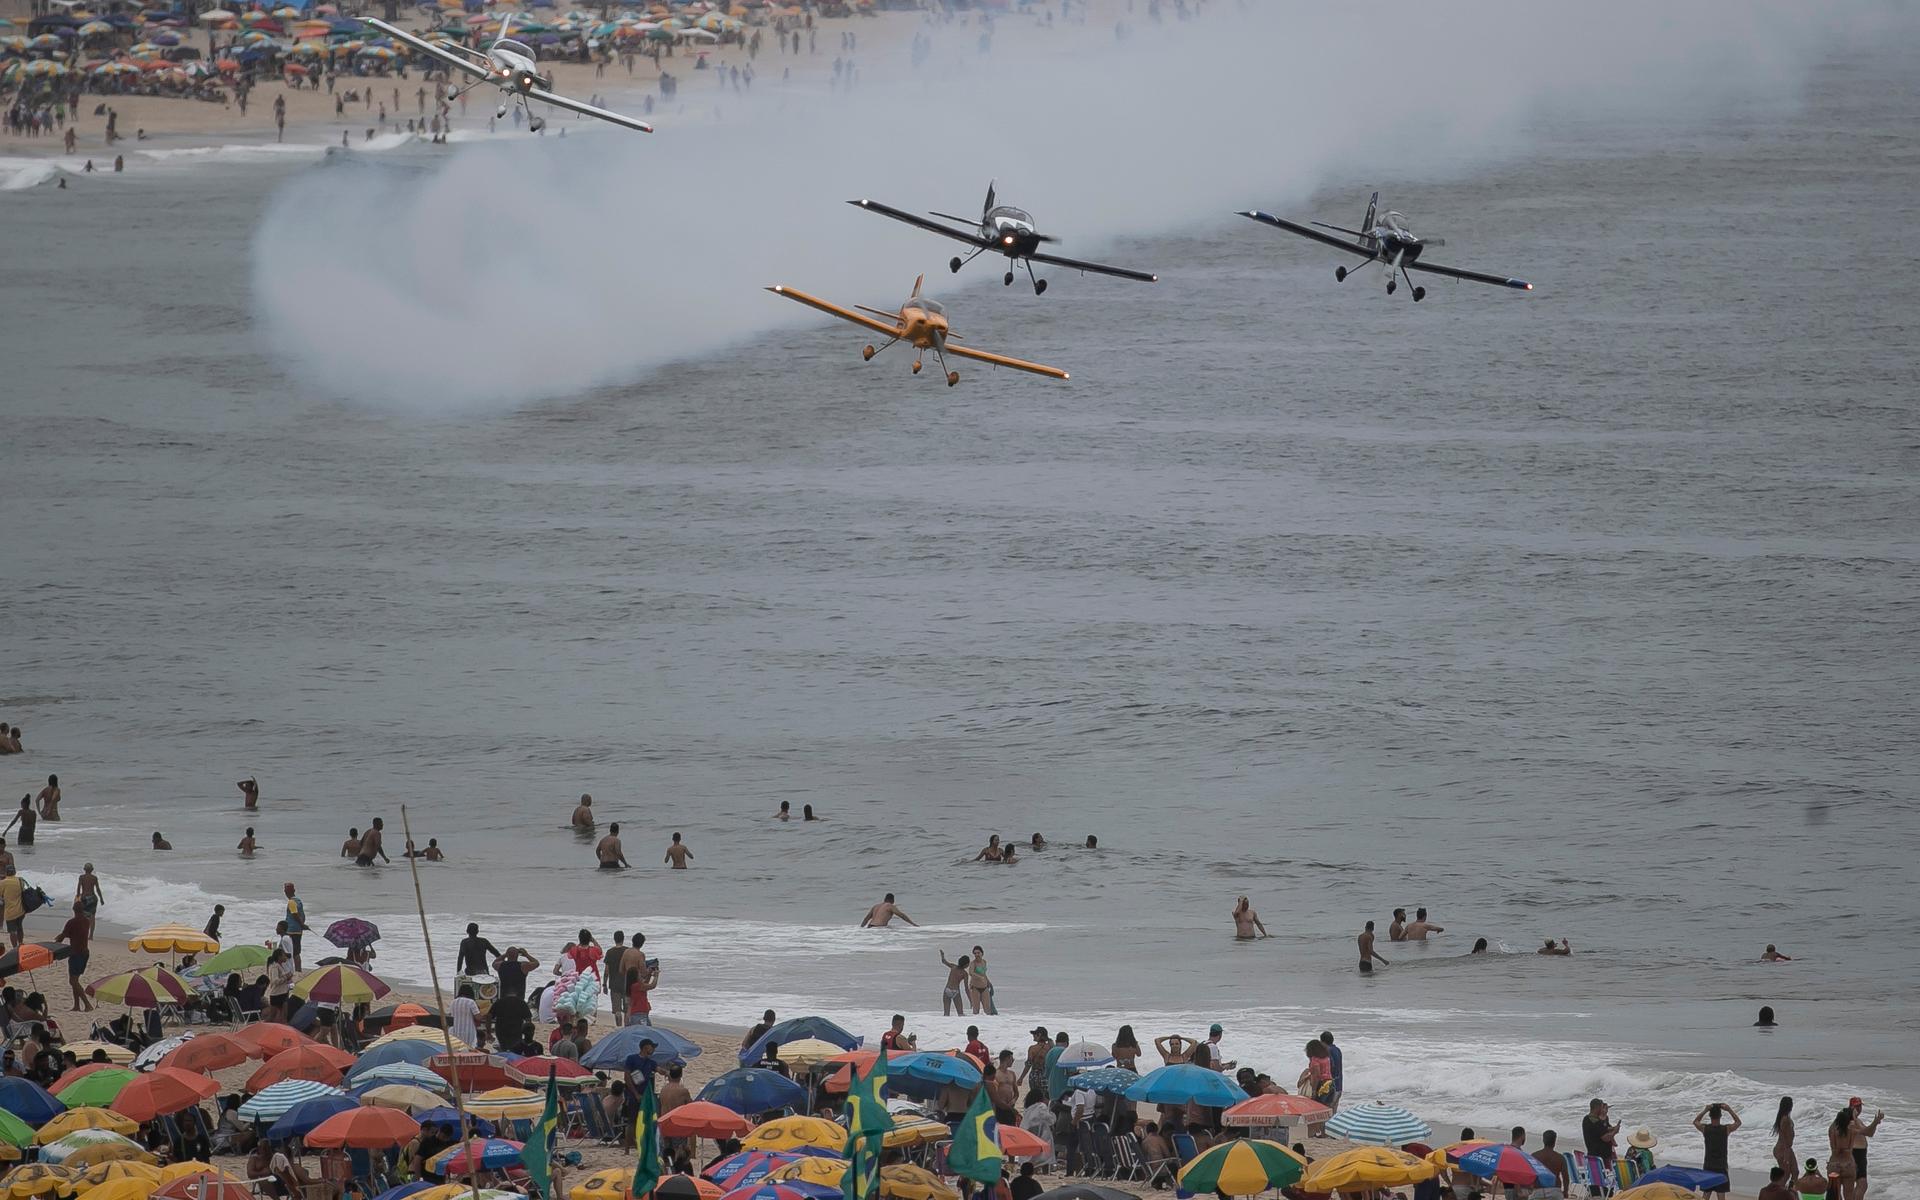 I Rio de Janeiro får man vänta lite till på tolvslaget, de ligger fyra timmar efter Bohuslän. ”The Smoke Squadron” från brasilianska flygvapnet flyger över Copacabanas strand.